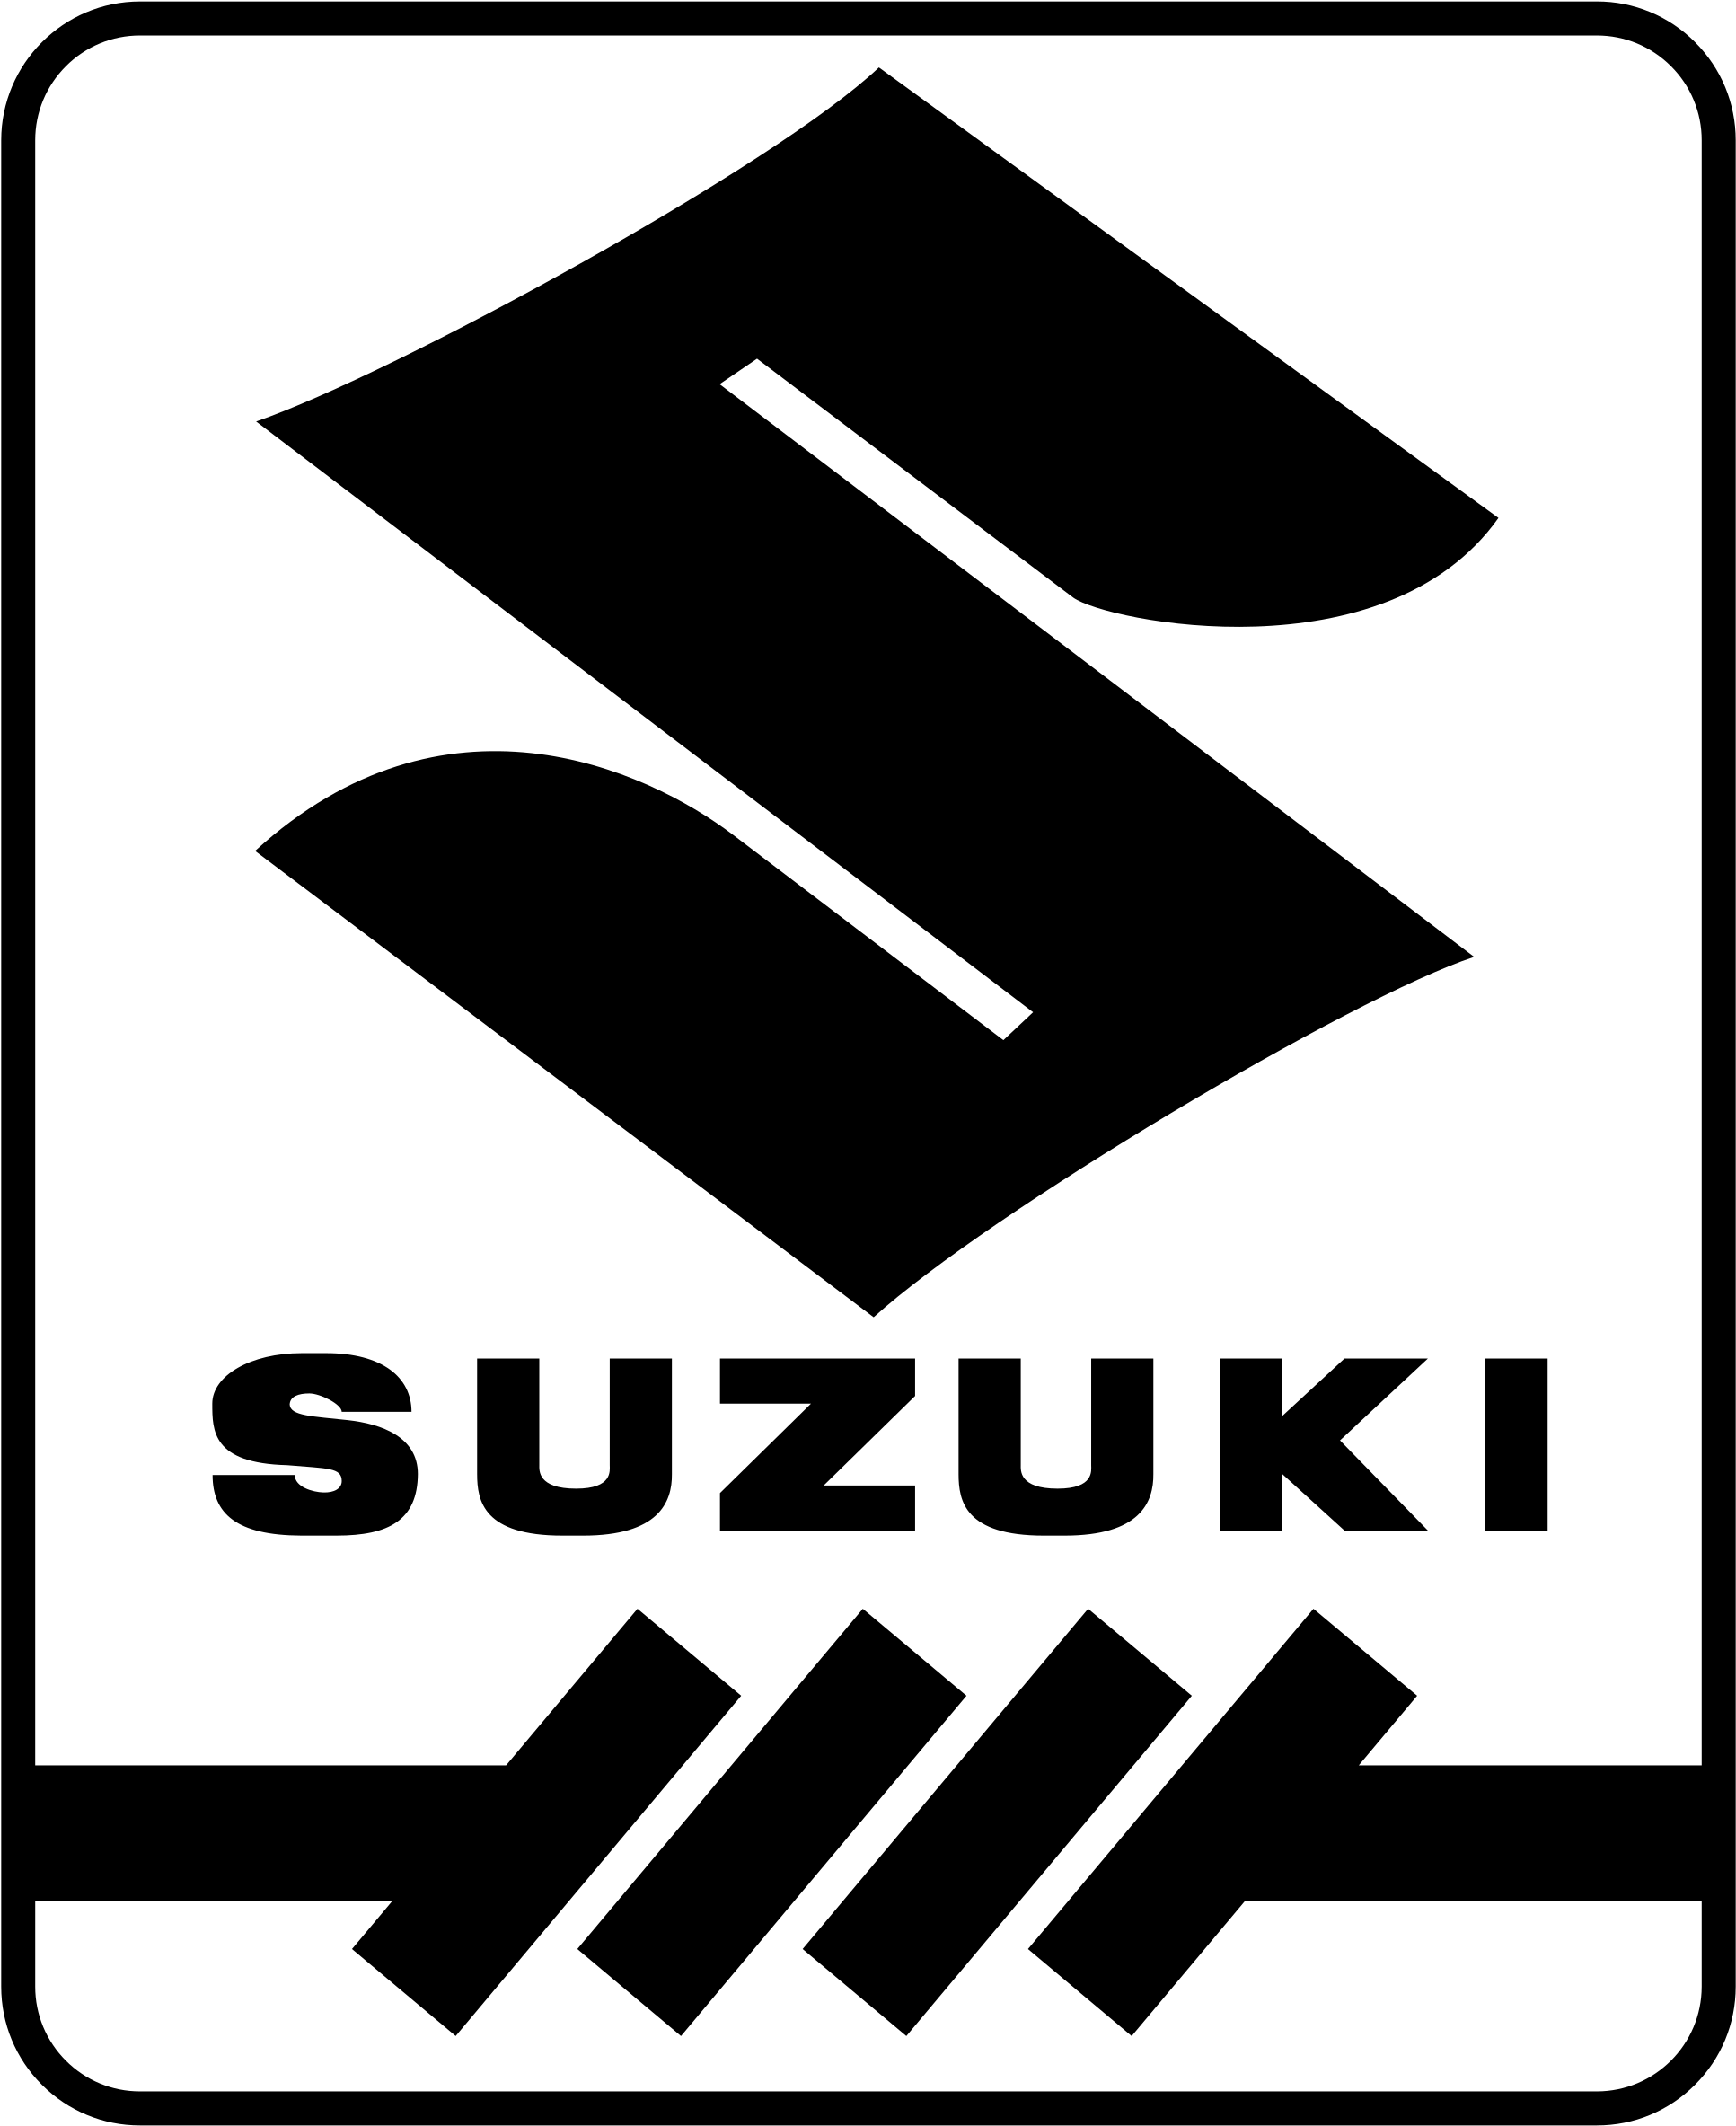 Suzuki Symbol PNG Transparent Image